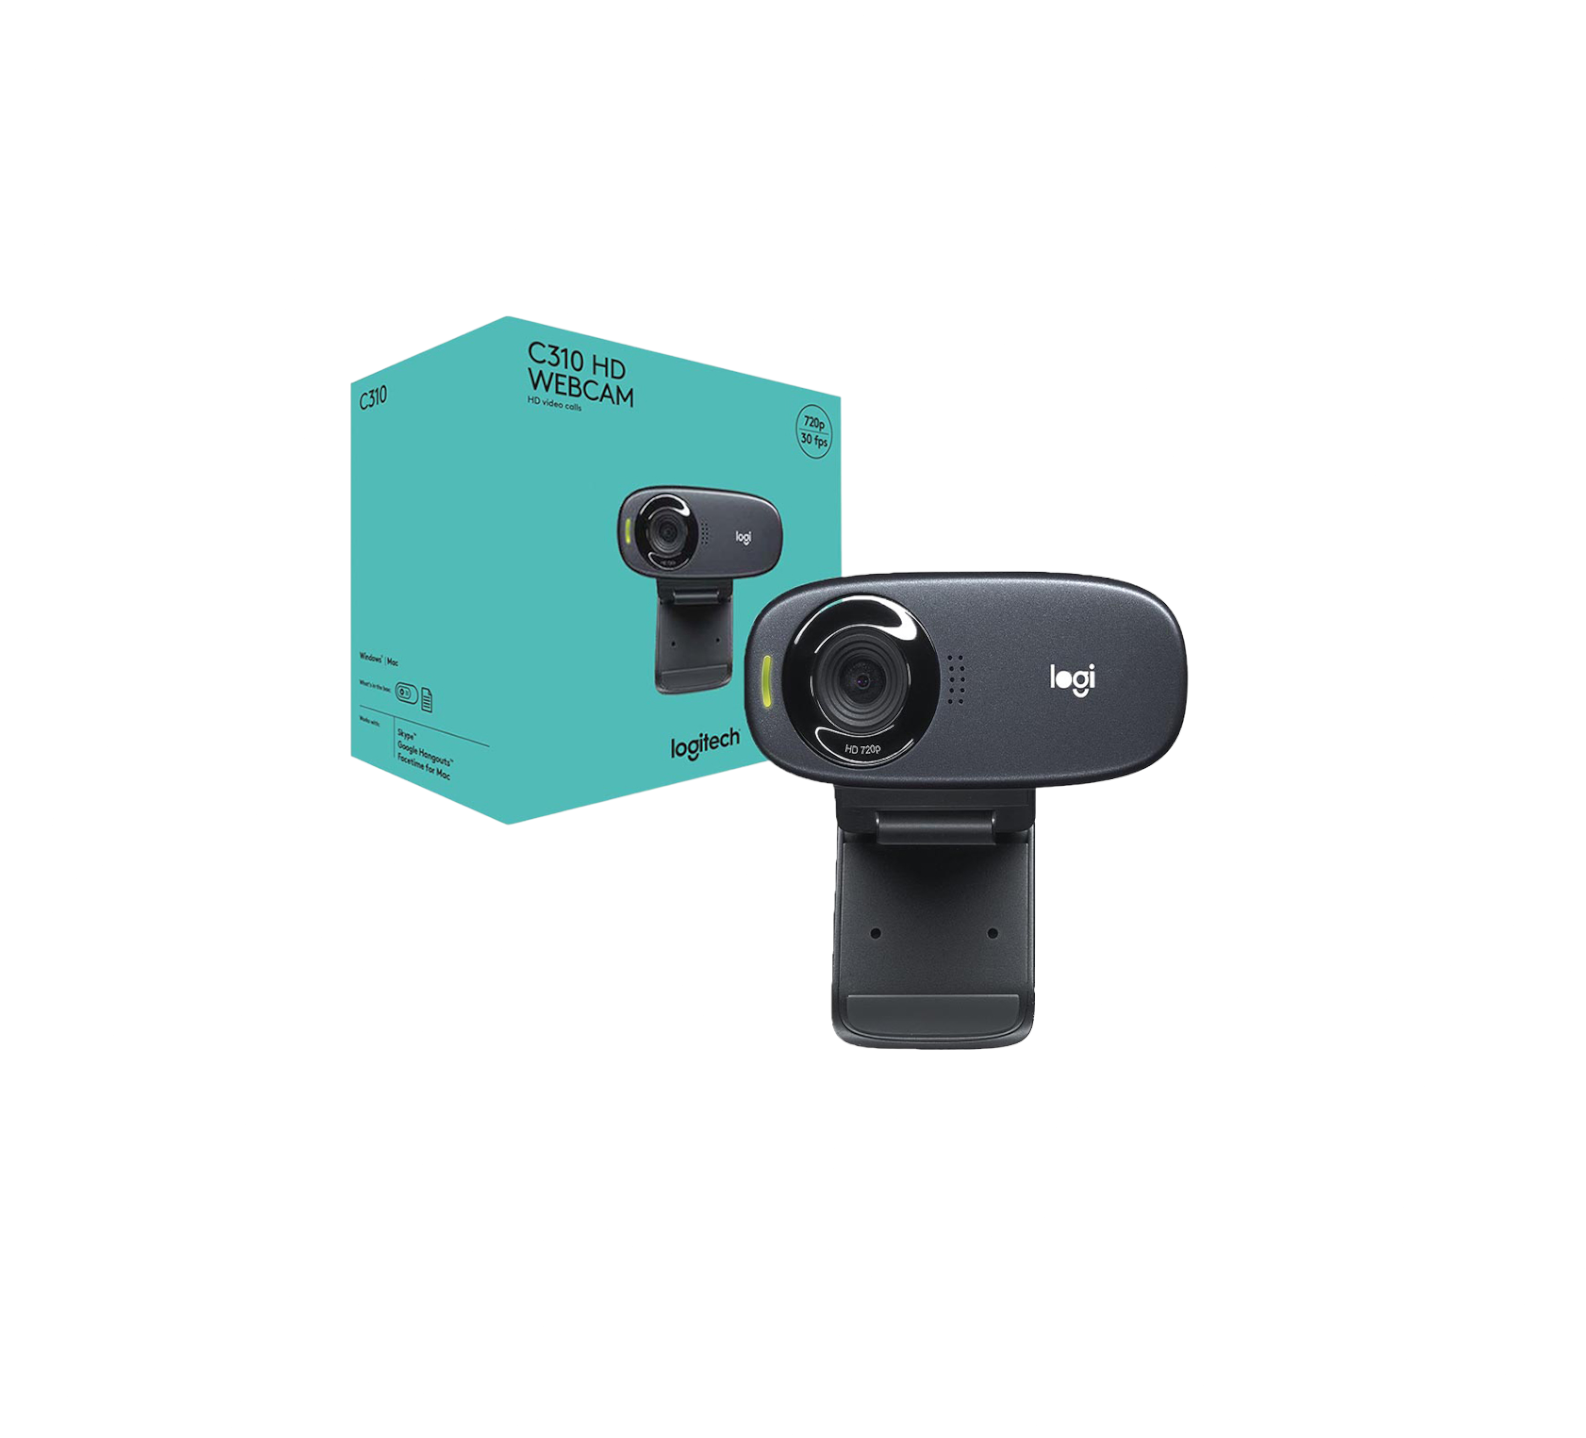 Logitech C270 HD 720p webcam for desktop and laptop